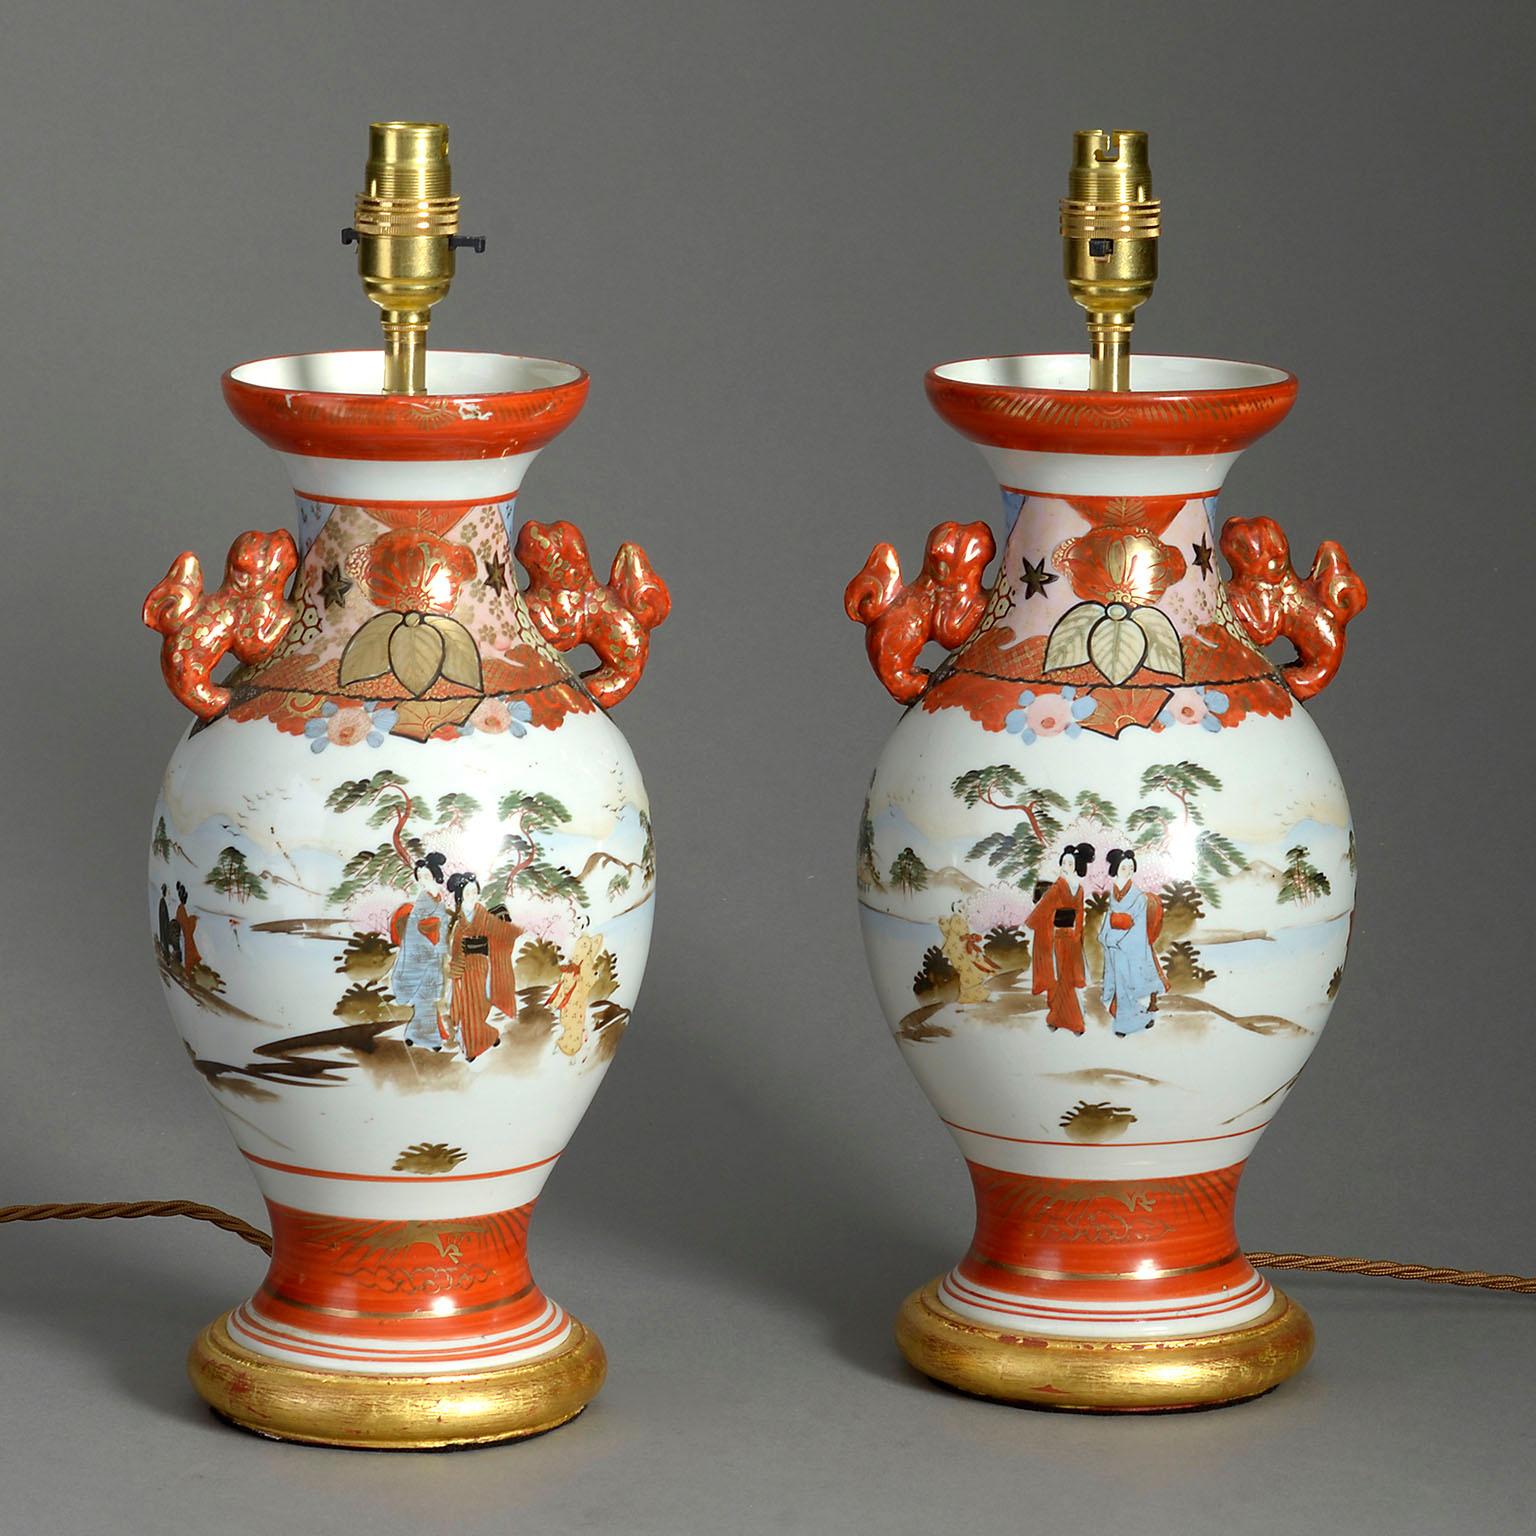 Paire de vases satsuma à glaçure orange datant de la fin du XIXe siècle, chacun avec des poignées et un corps bulbeux, décorés de personnages de cour dans des paysages. Elles sont maintenant montées sur des socles en bois doré tourné comme lampes de